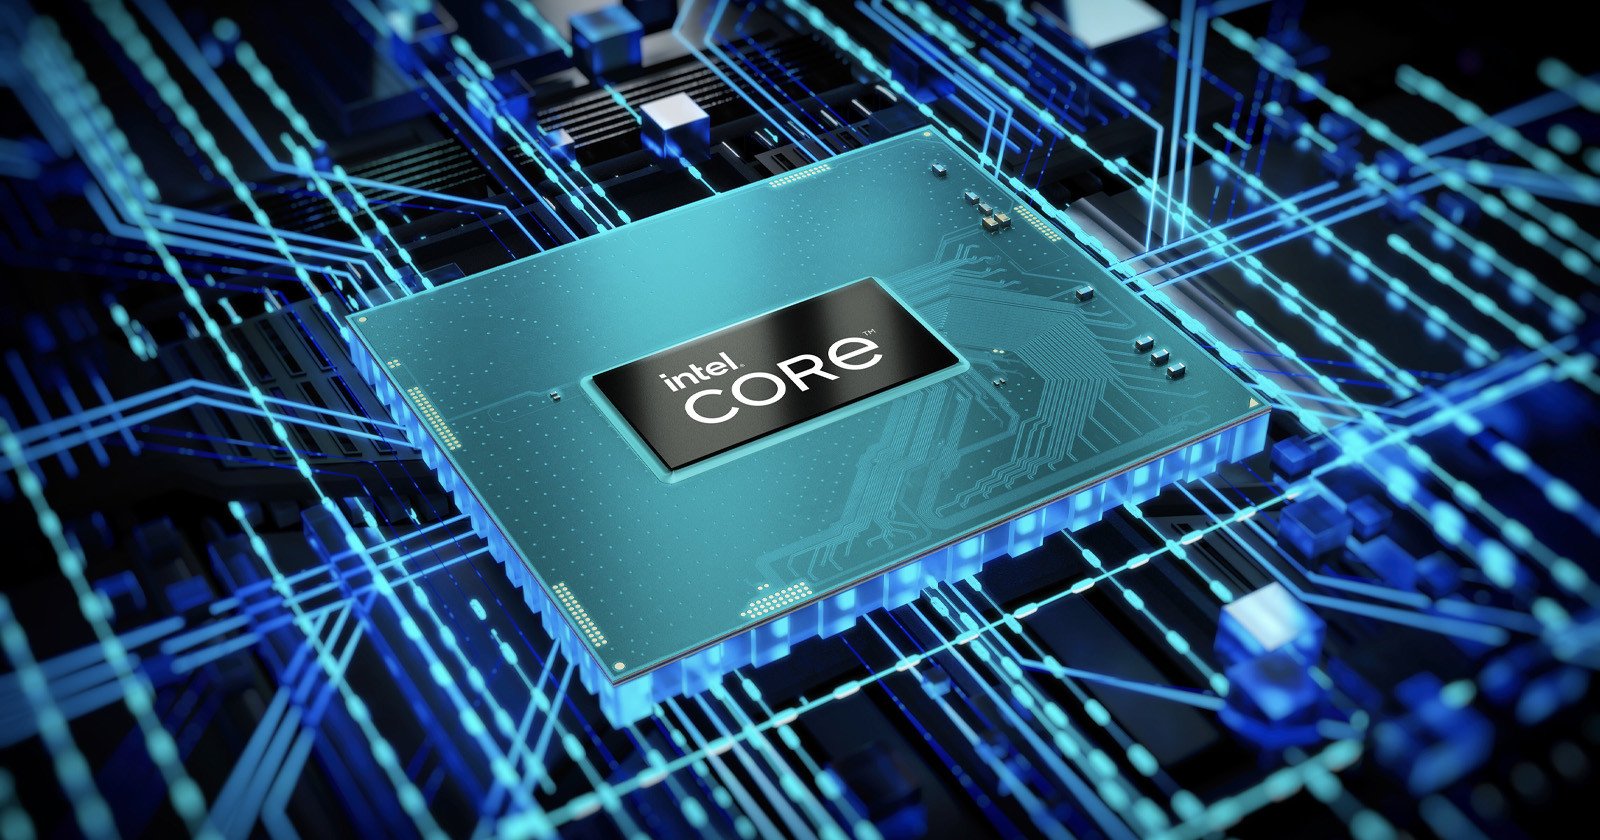 Intels 12th Gen Core HX Mobile Processors are Designed for Creatives